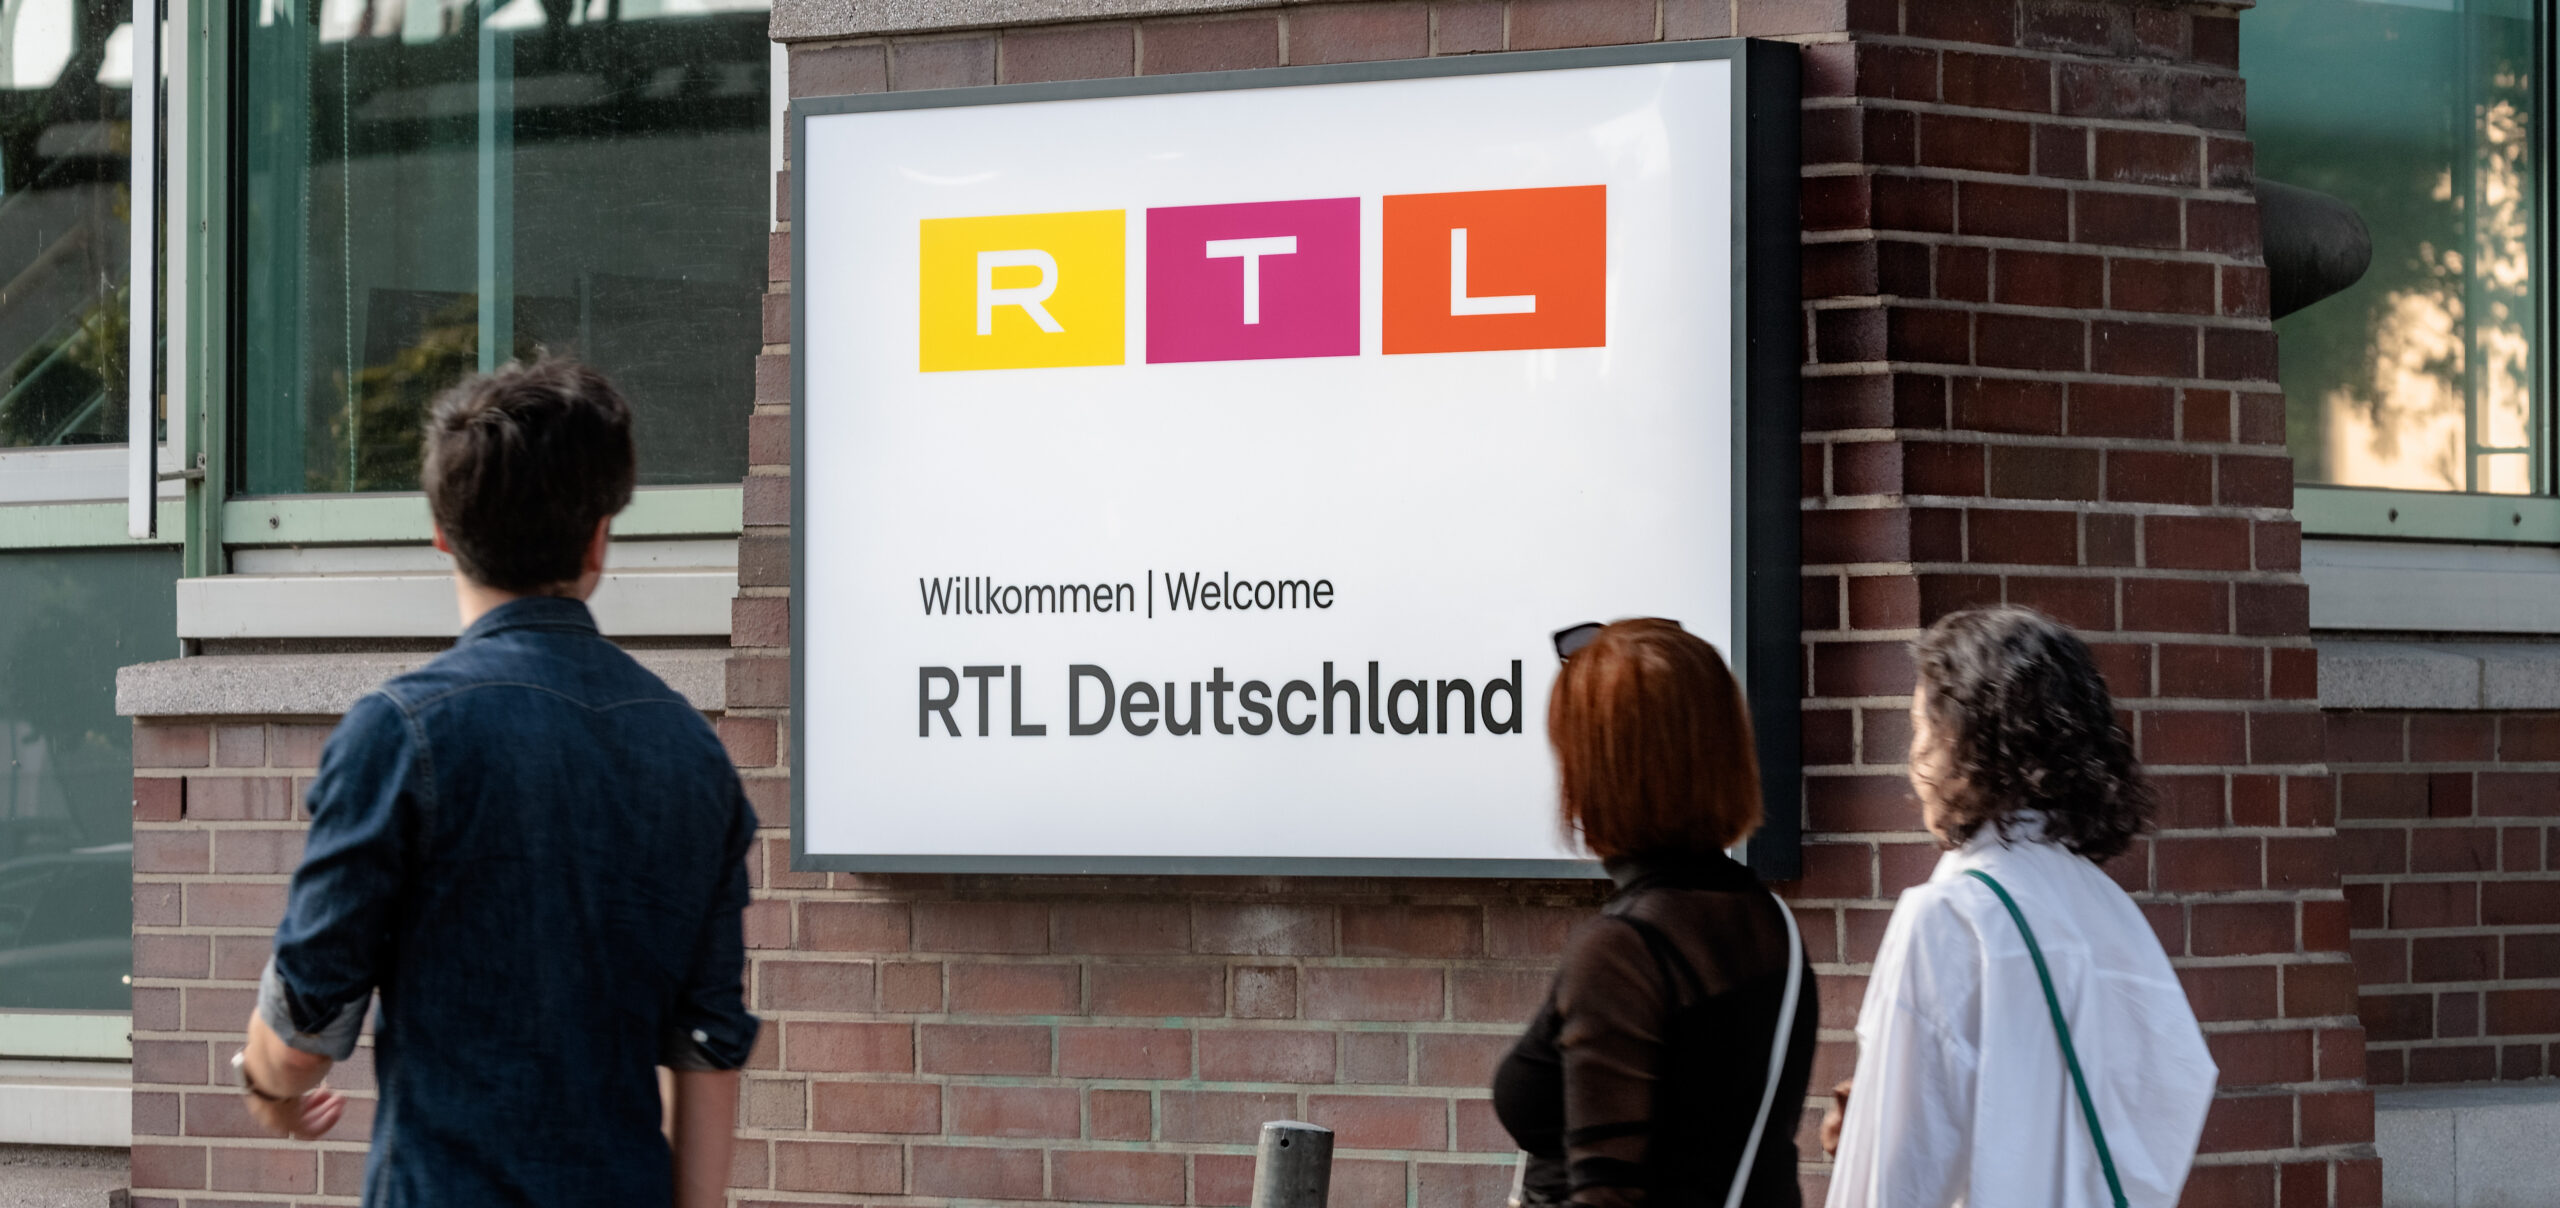 RTL statt Gruner + Jahr: Von der langen Geschichte des Hamburger Verlags ist am Baumwall nichts mehr zu sehen.